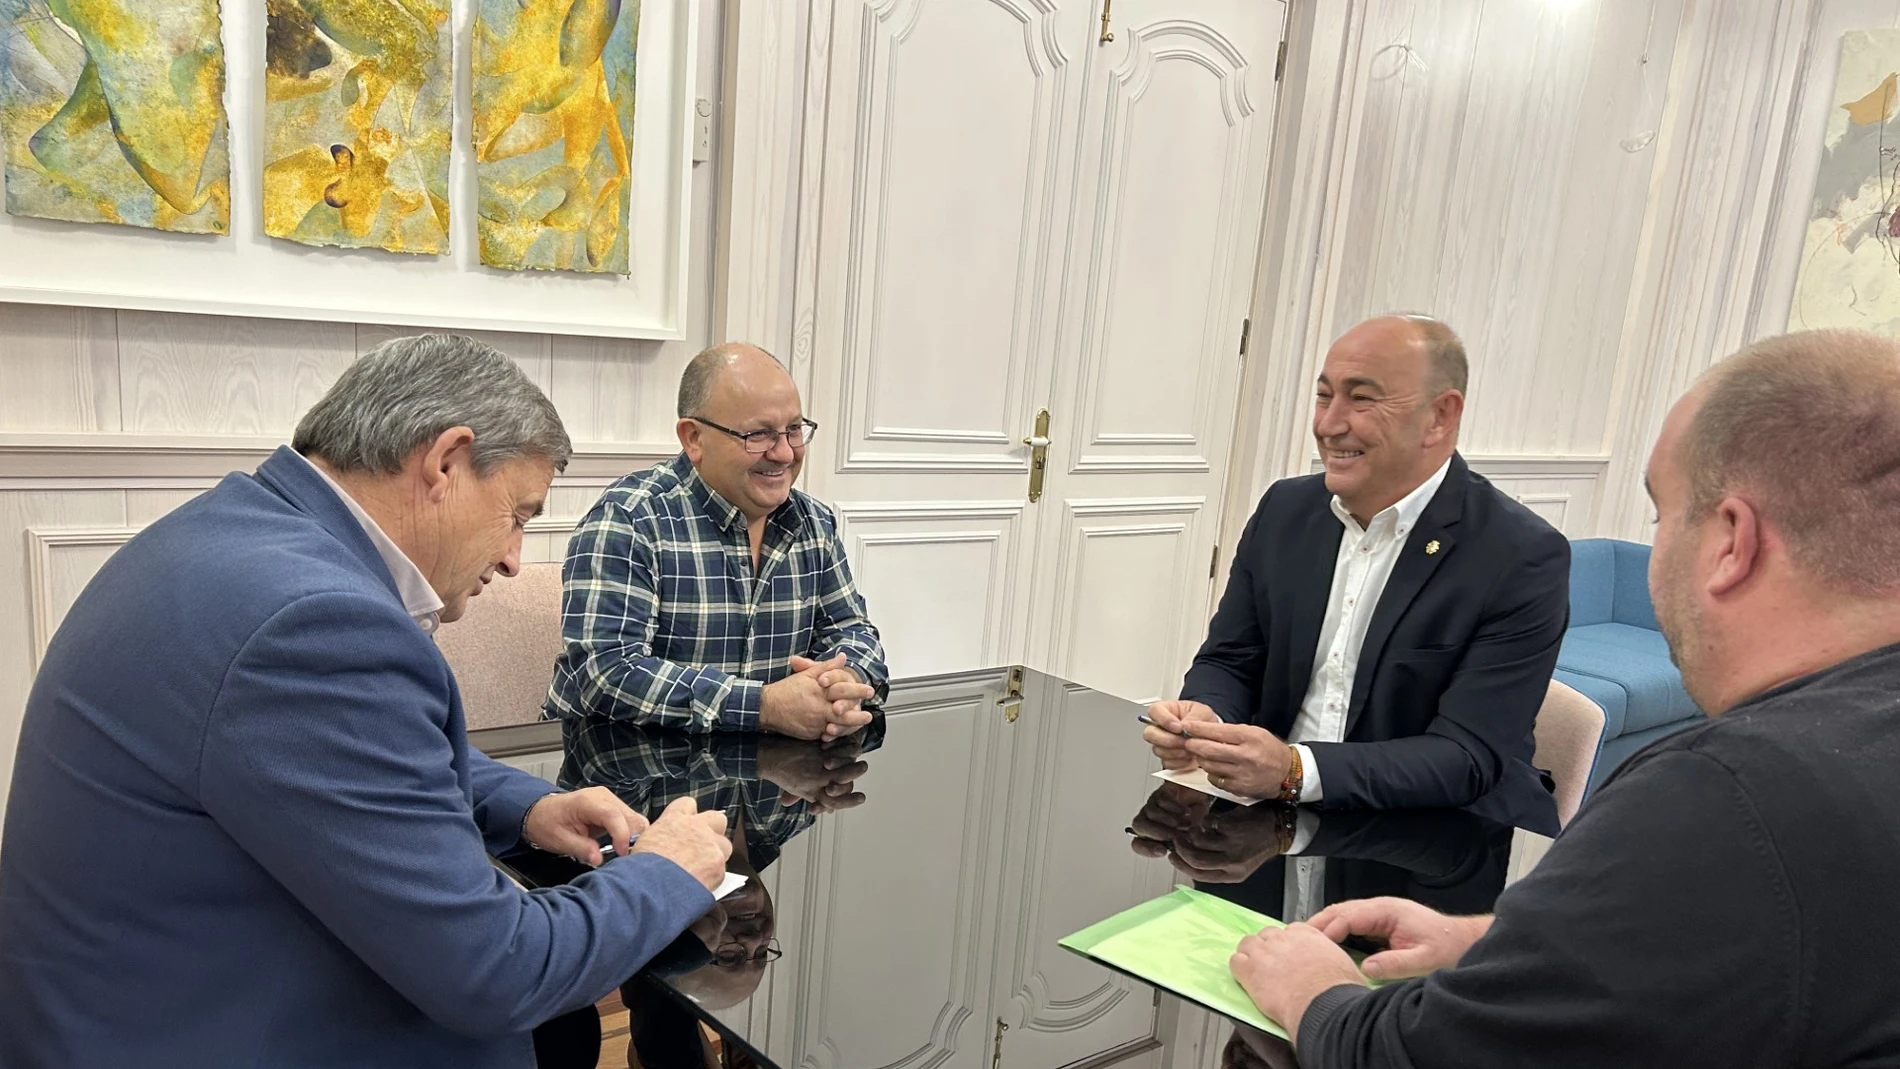 El presidente de la Diputación de Segovia, Miguel Ángel de Vicente, recibe al alcalde de Sebúlcor, Francisco Pastor